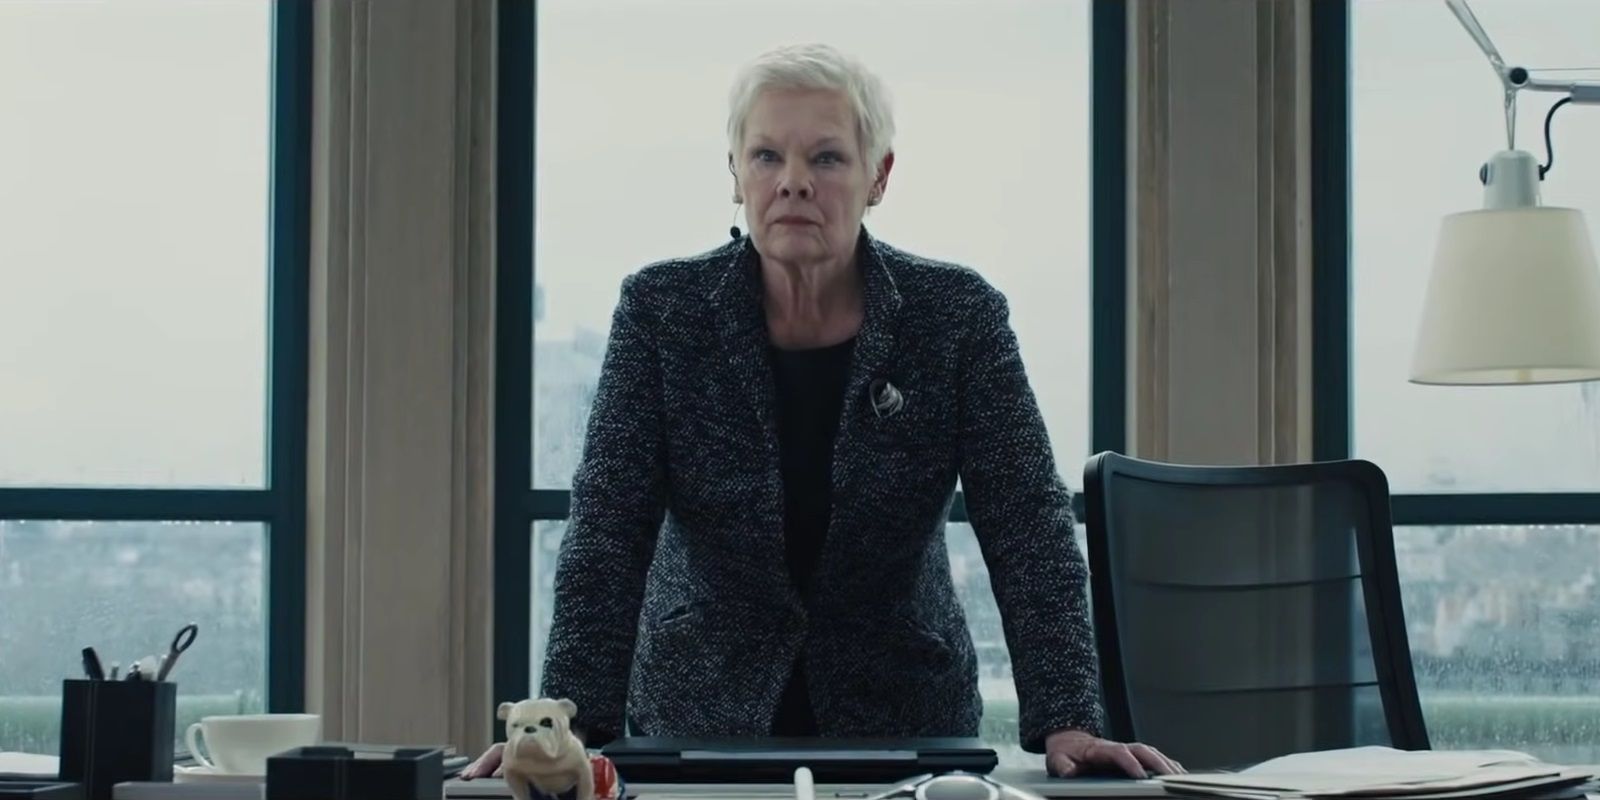 Judi Dench as M in her office in Skyfall